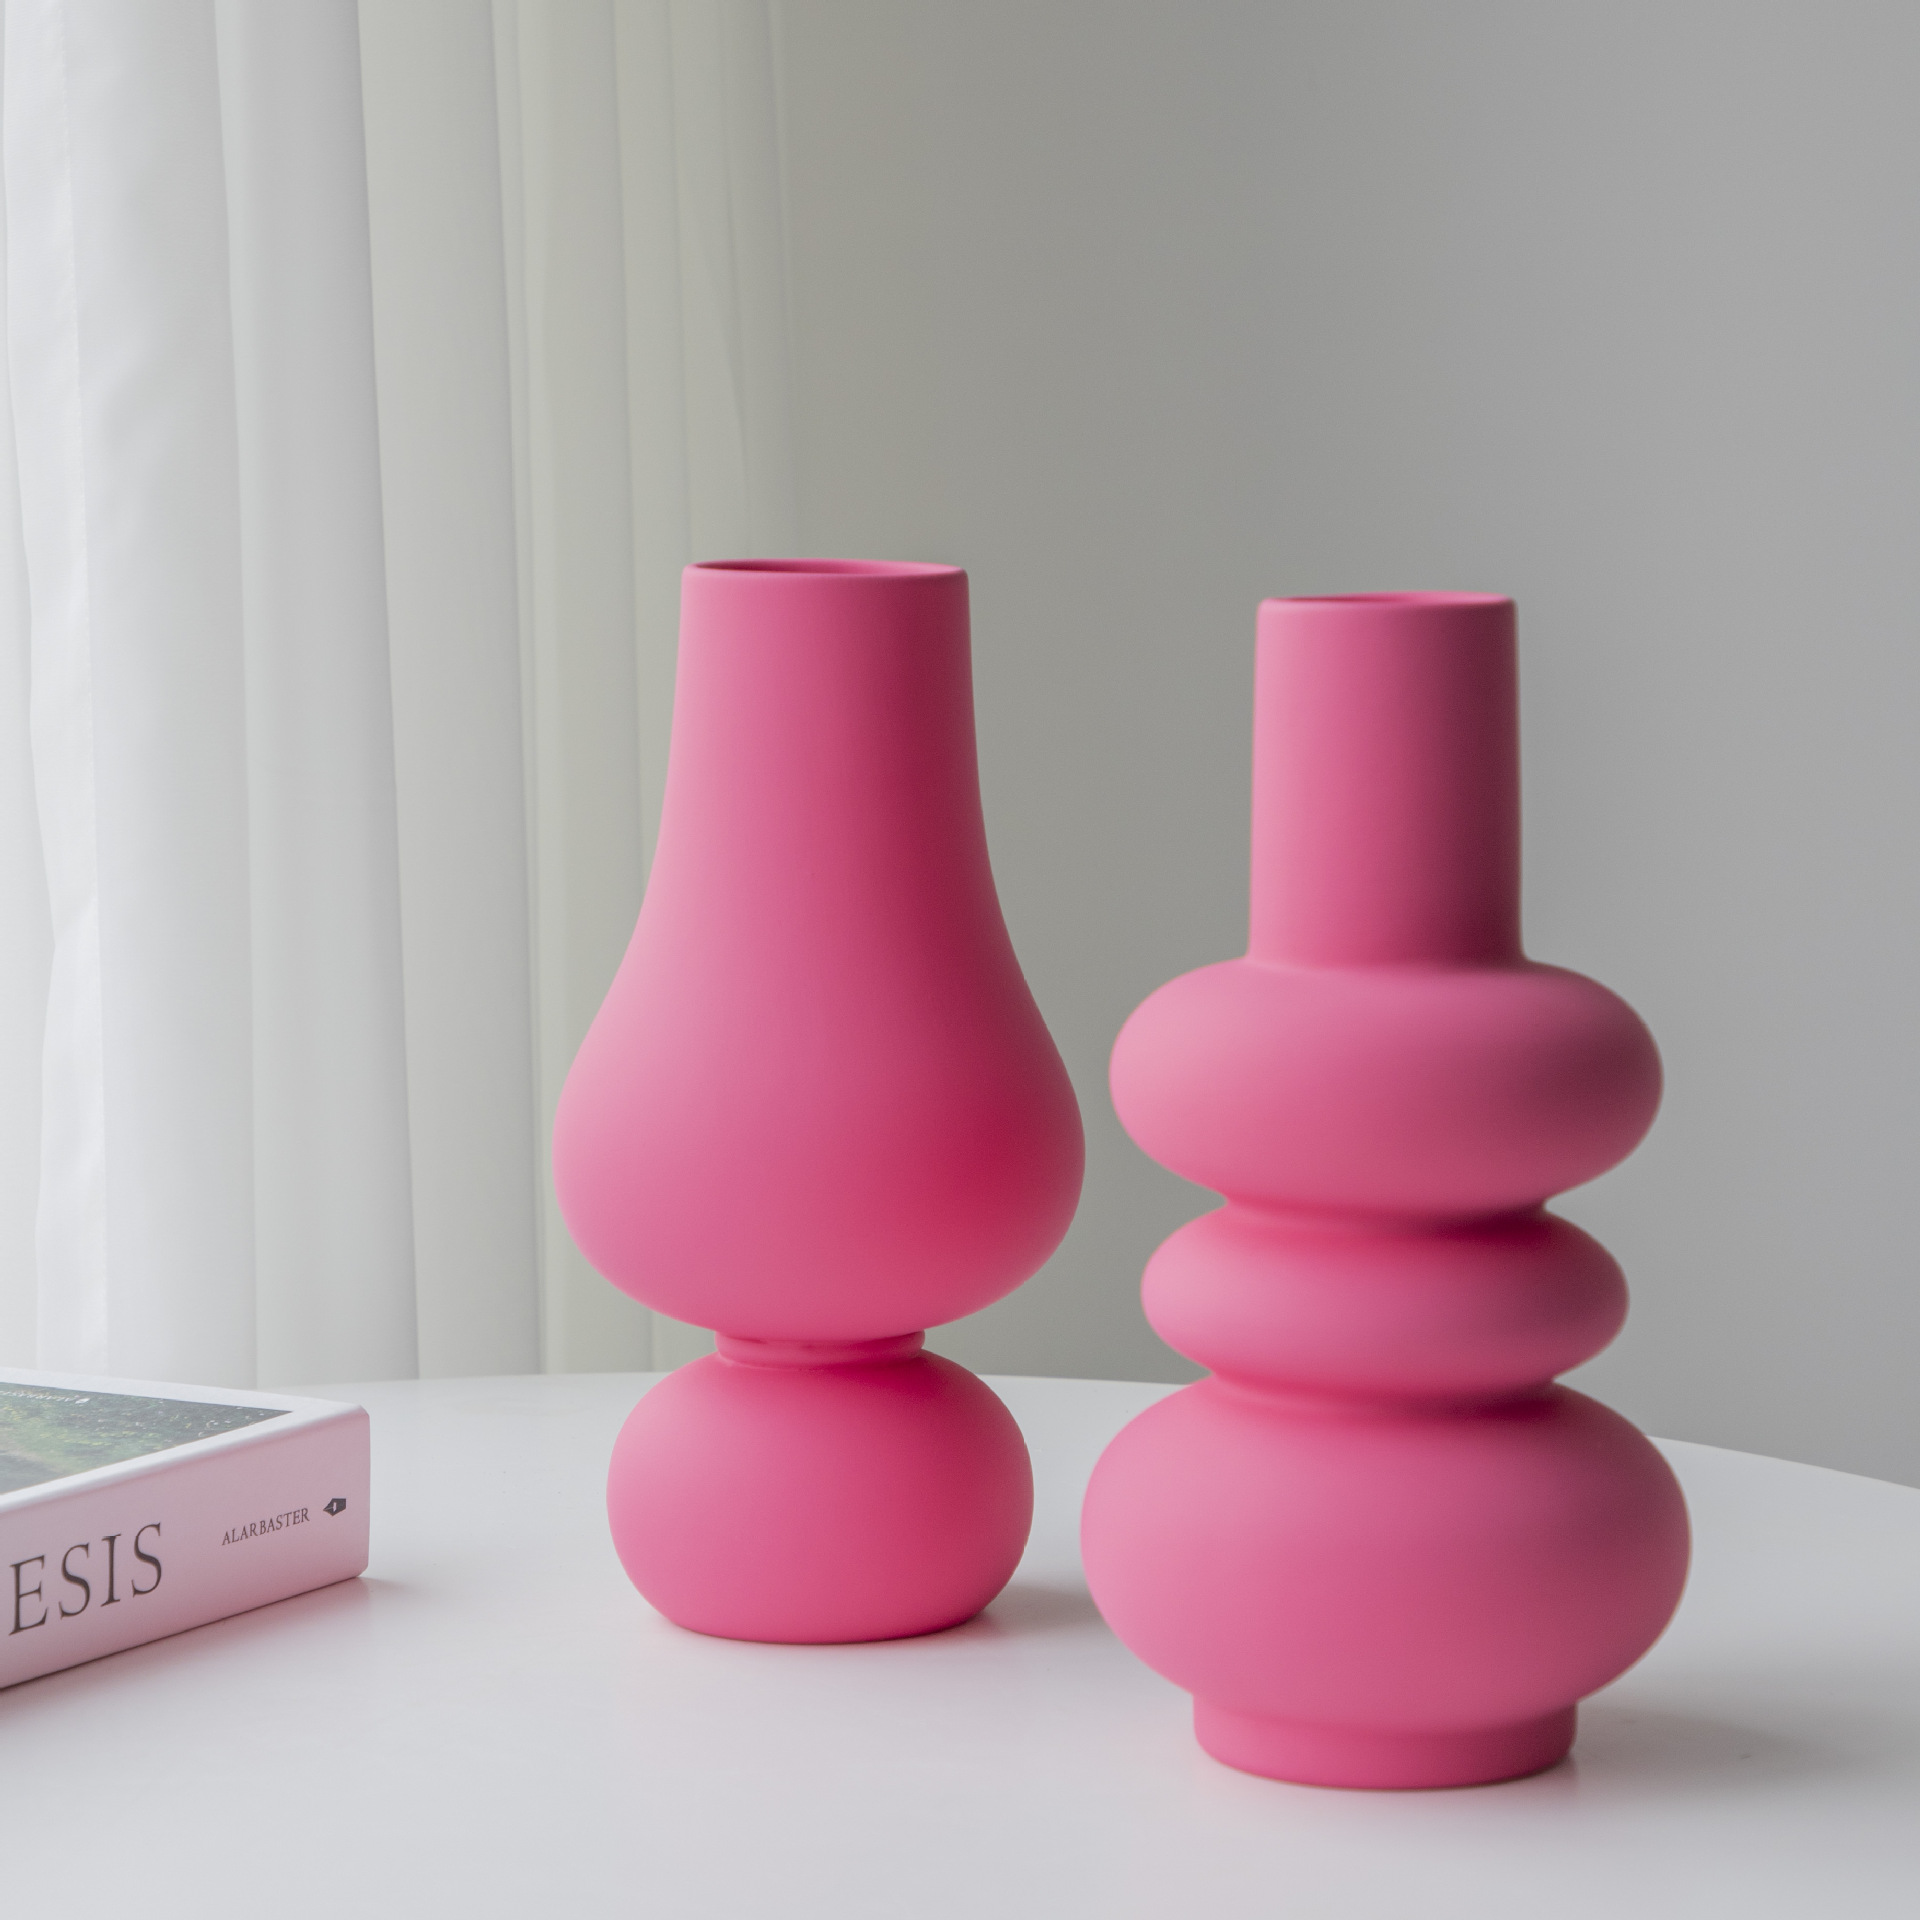 创意陶瓷花瓶家用客厅酒店插花软装饰品外贸亚马逊芭比粉艺术摆件